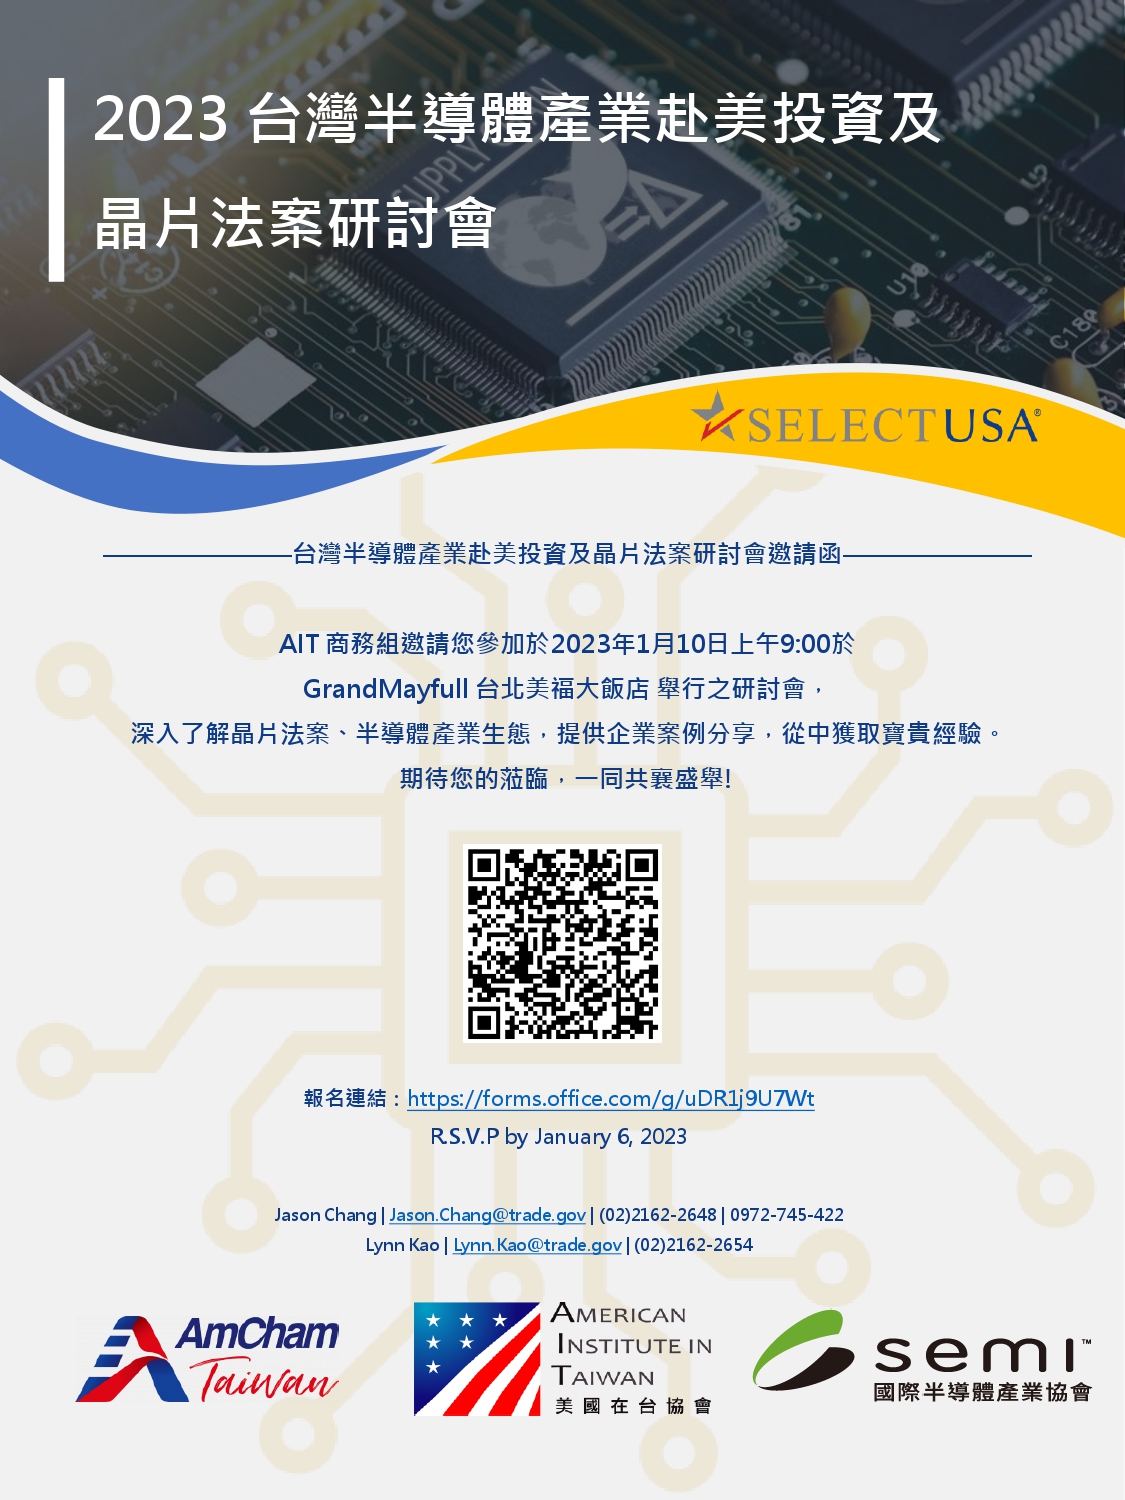 【敬邀參與】2023 台灣半導體產業赴美投資及晶片法案進度研討會